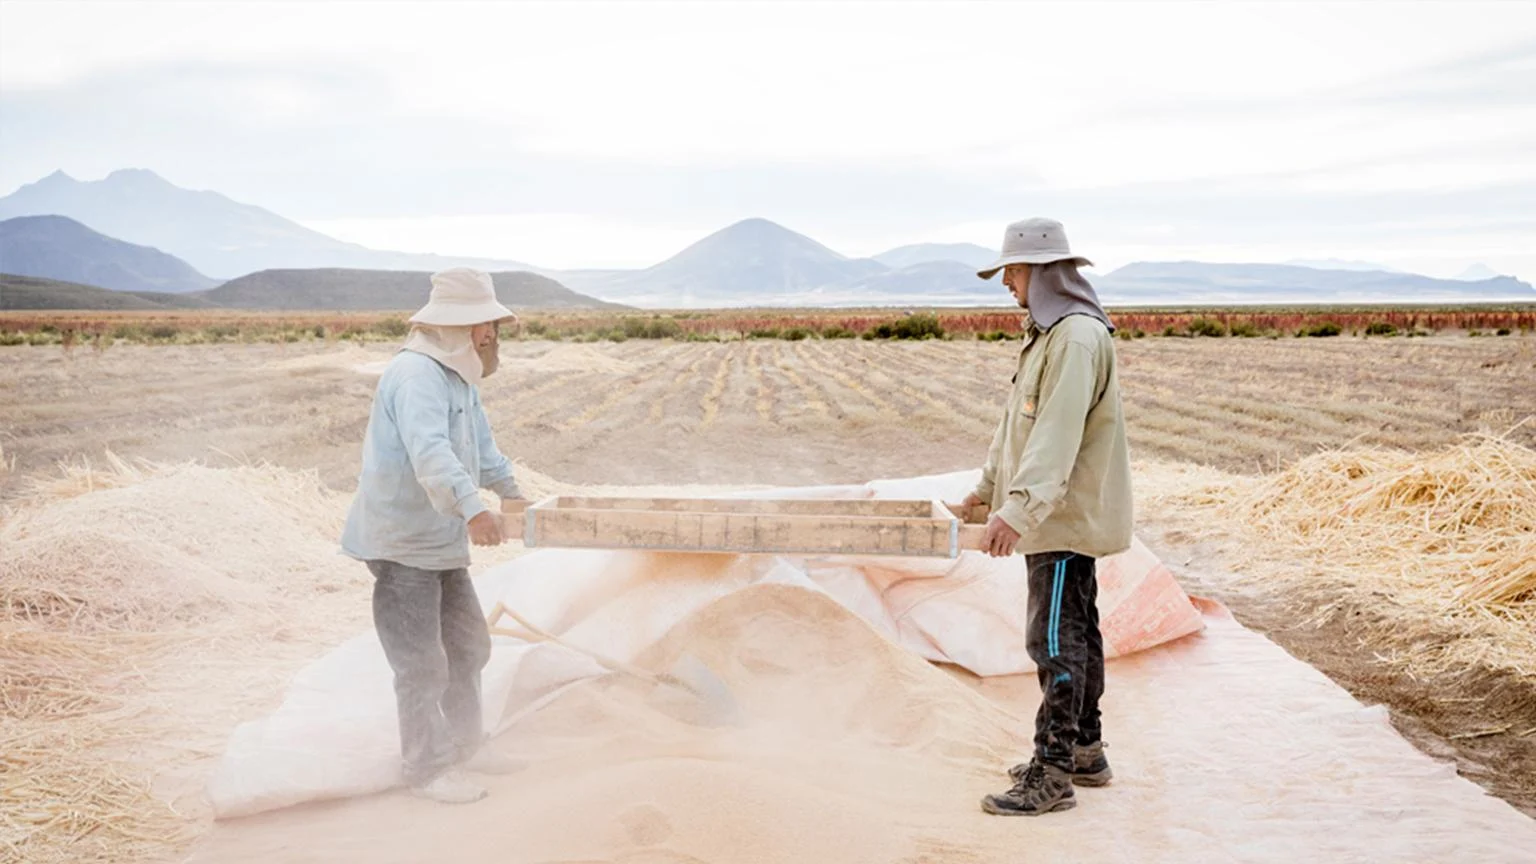 Zwei Quinoa-Bauern sieben auf einem Feld Quinoa-Körner.